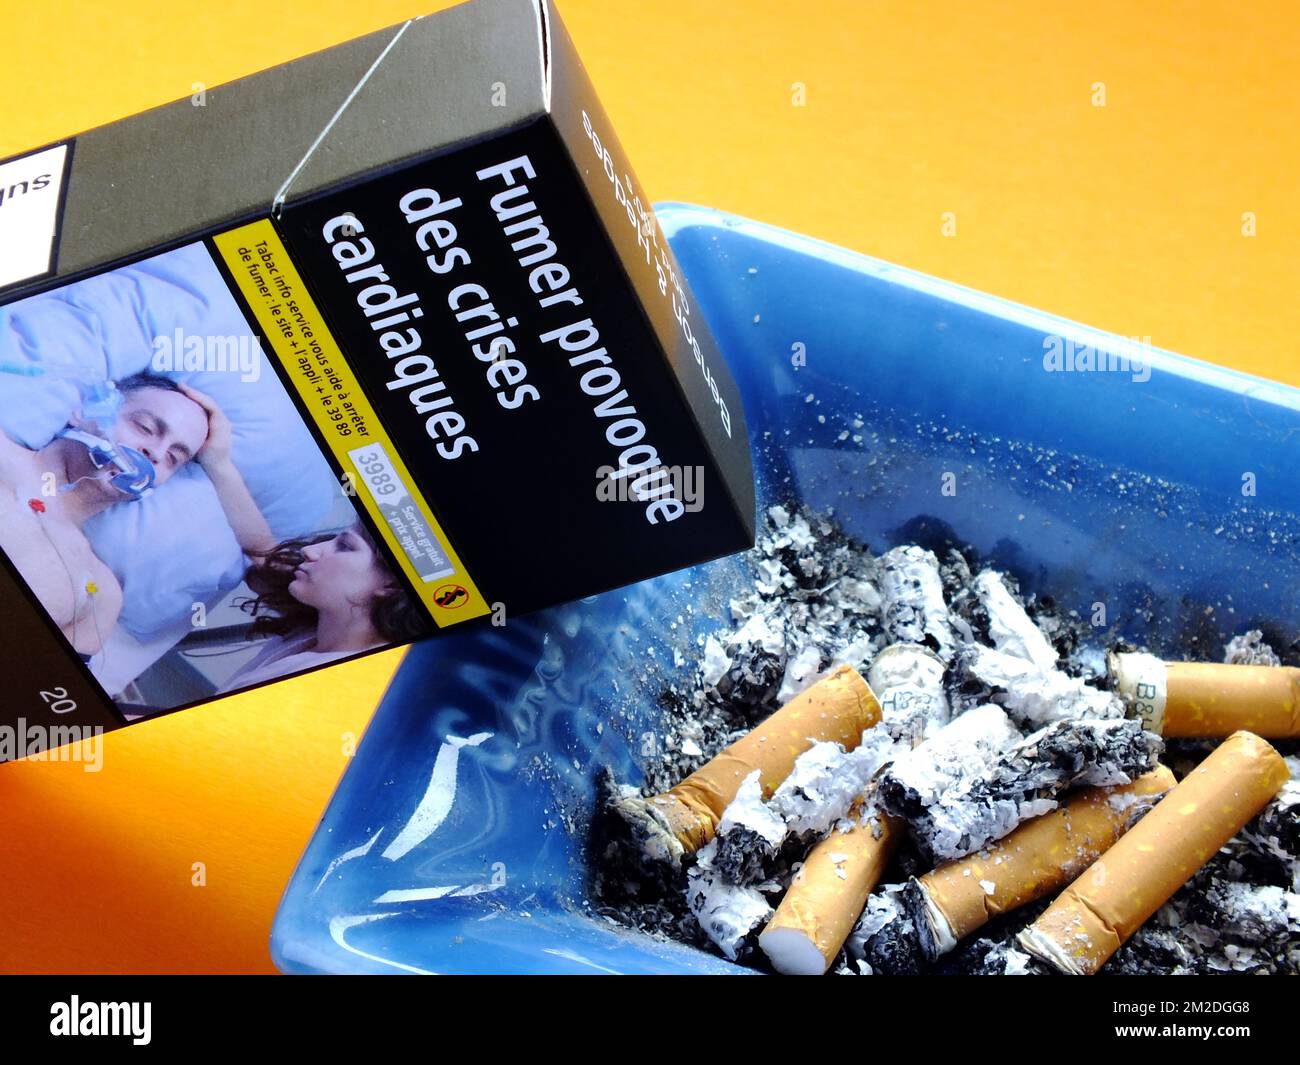 Tobacco | Tabac cigarettes 04/03/2018 Stock Photo